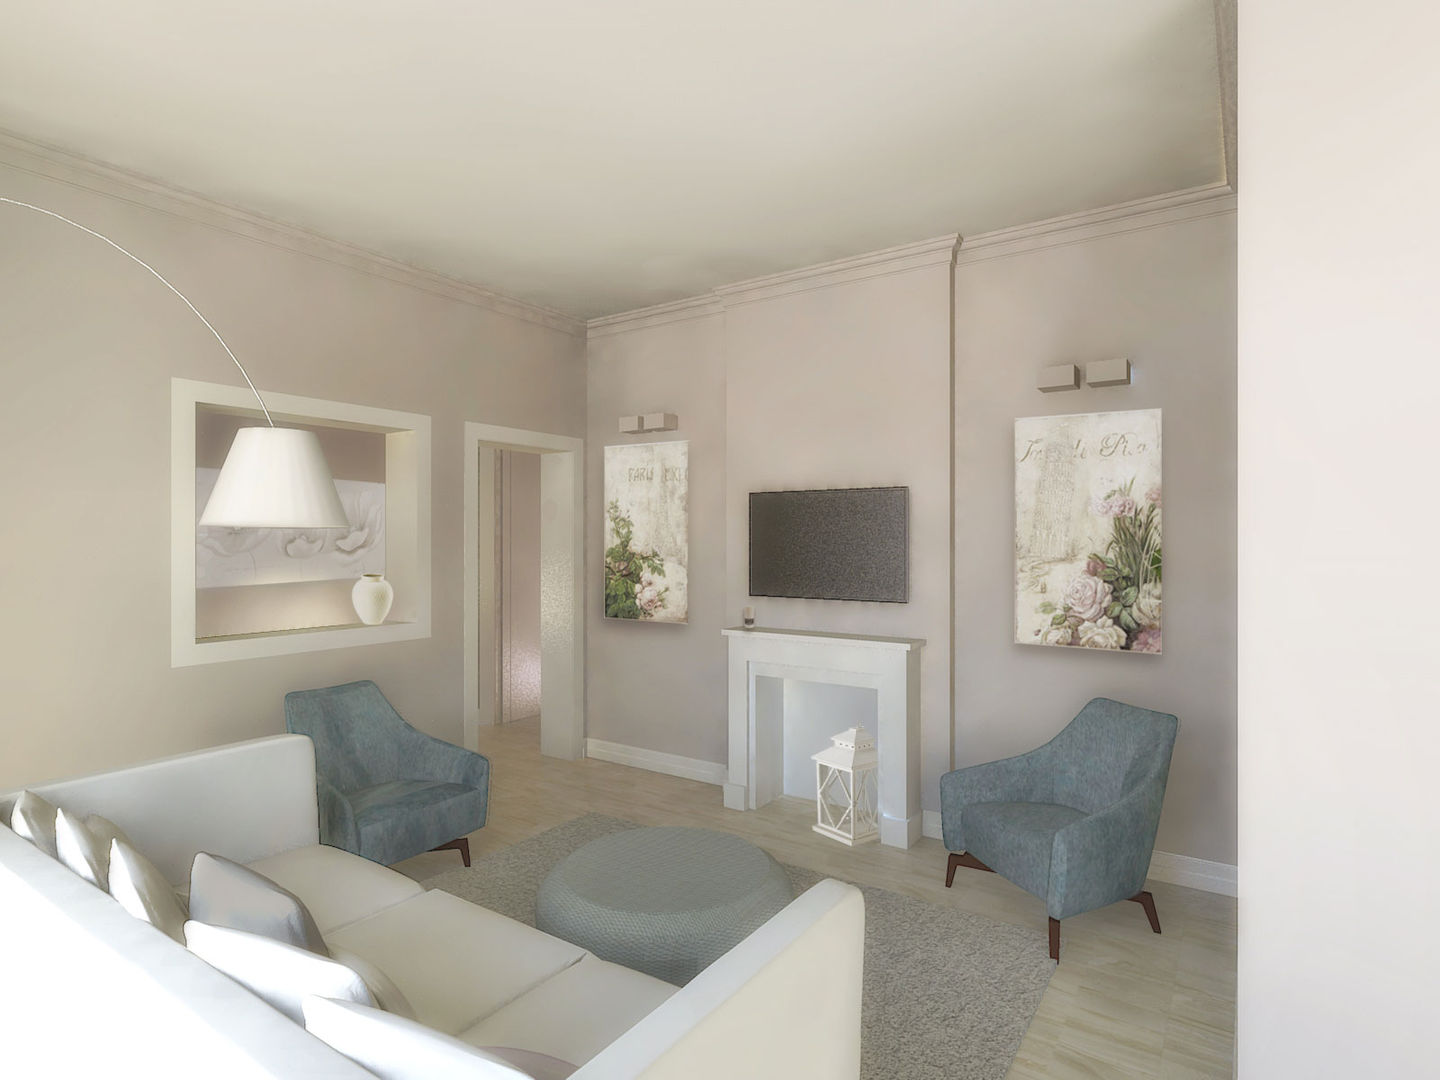 Un appartamento tra il classico e il moderno, Flavia Benigni Architetto Flavia Benigni Architetto Living room